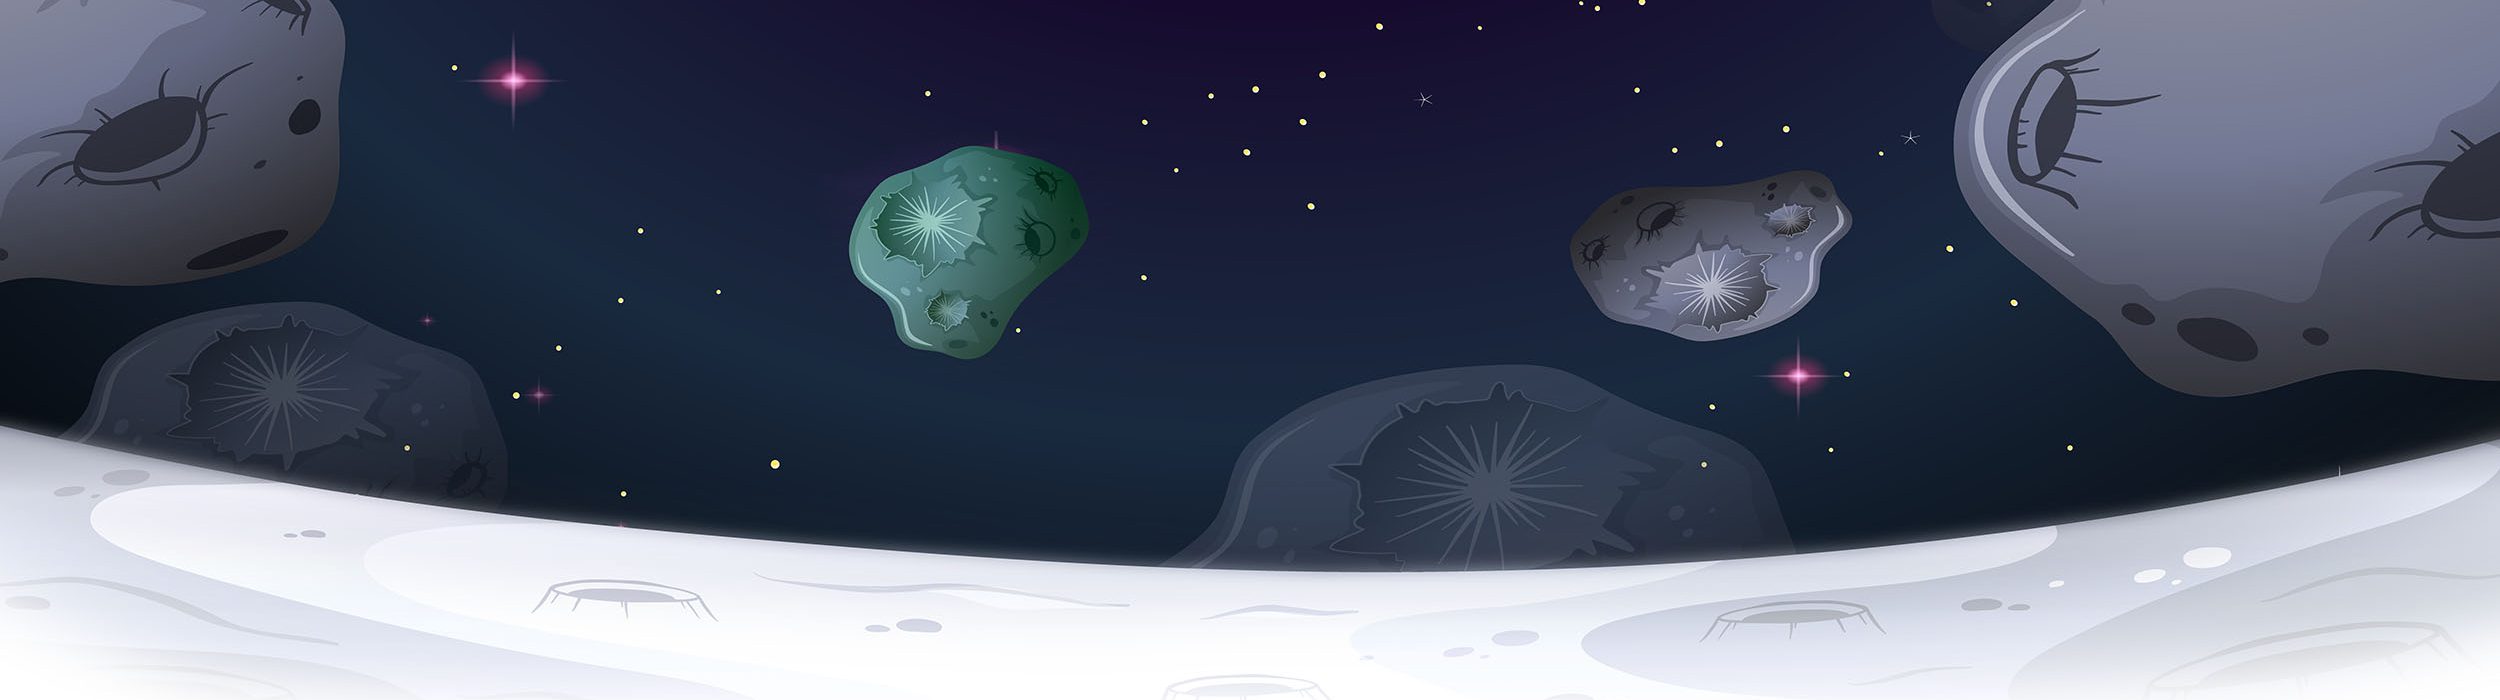 Asteroid moon landscape scene illustration